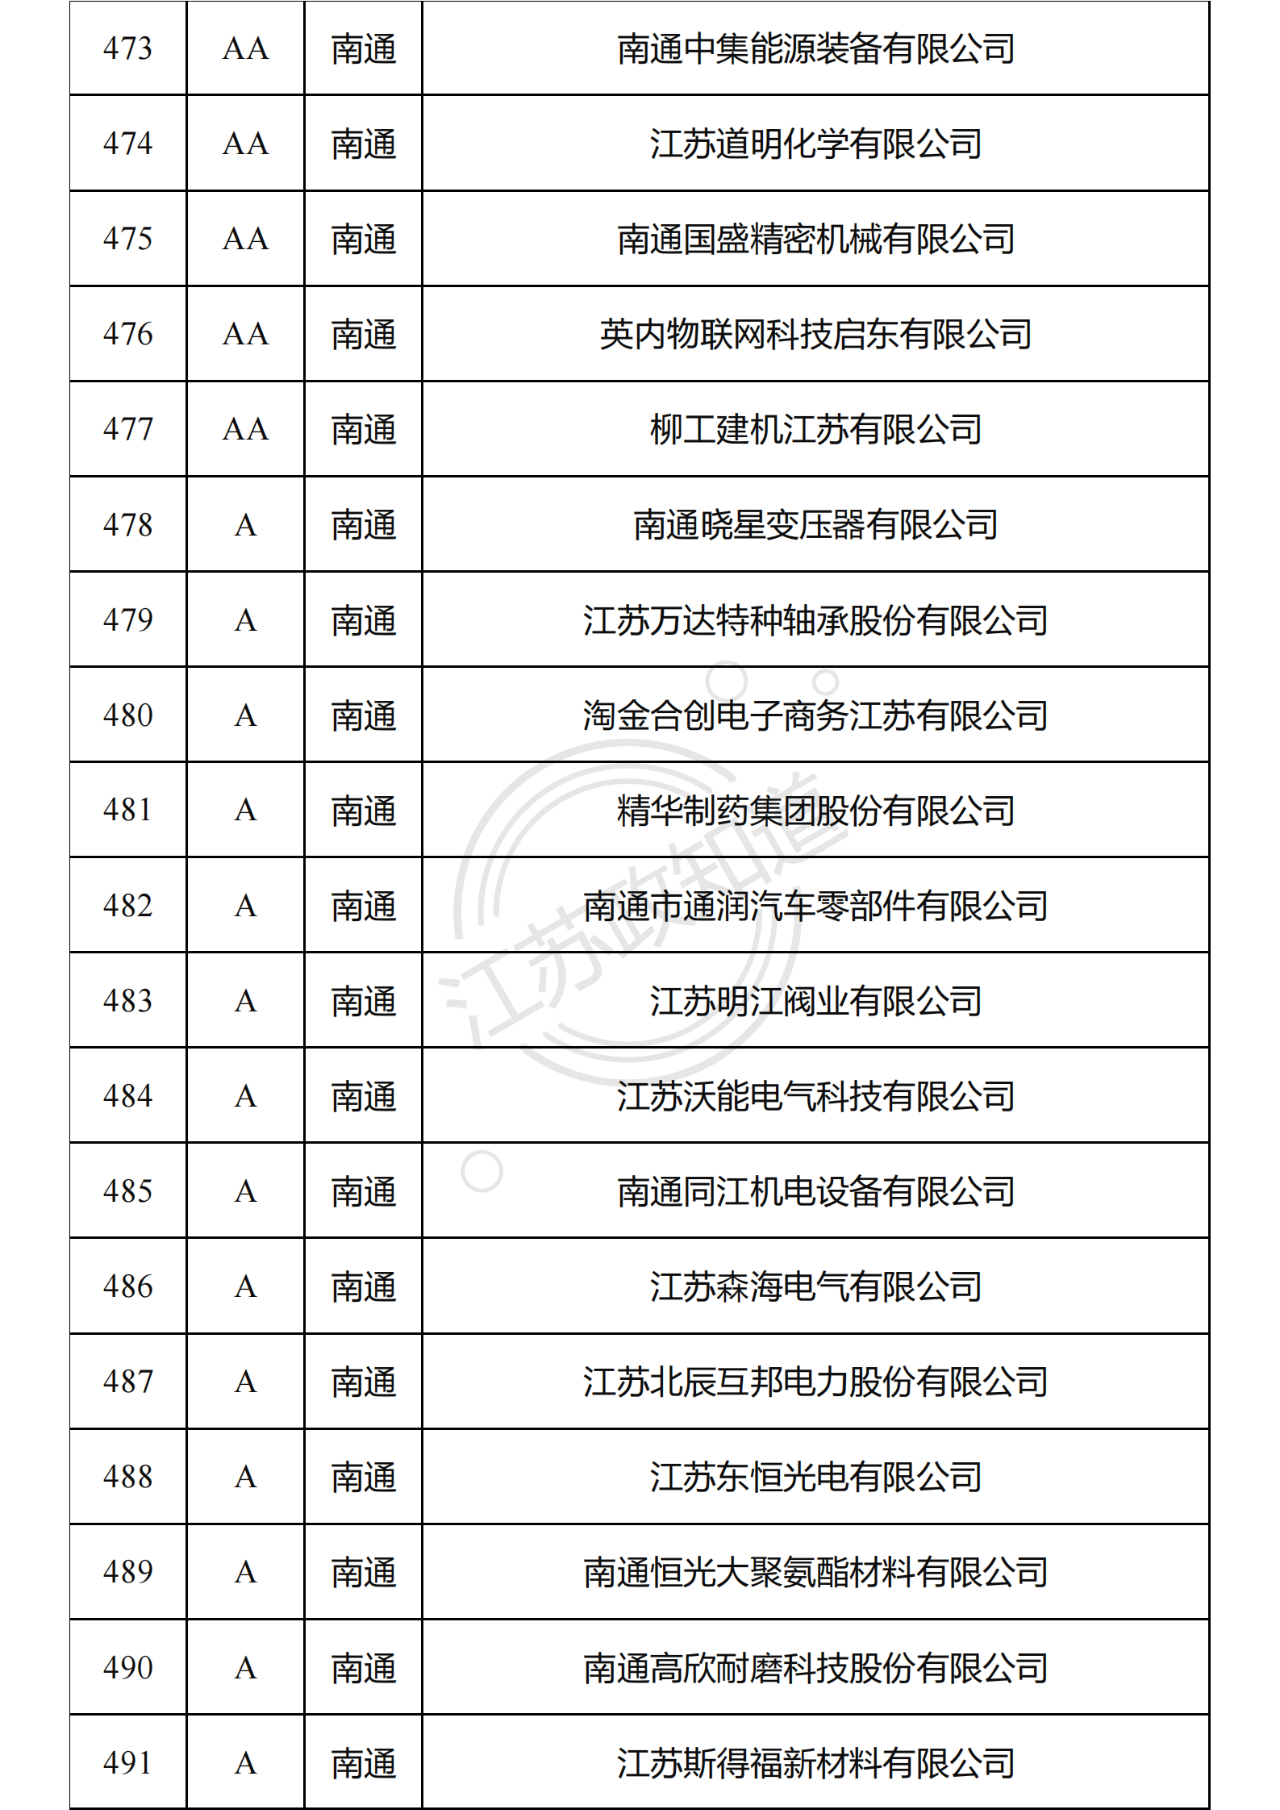 2022年度江苏省两化融合管理体系贯标试点企业培育对象拟认定名单27.png